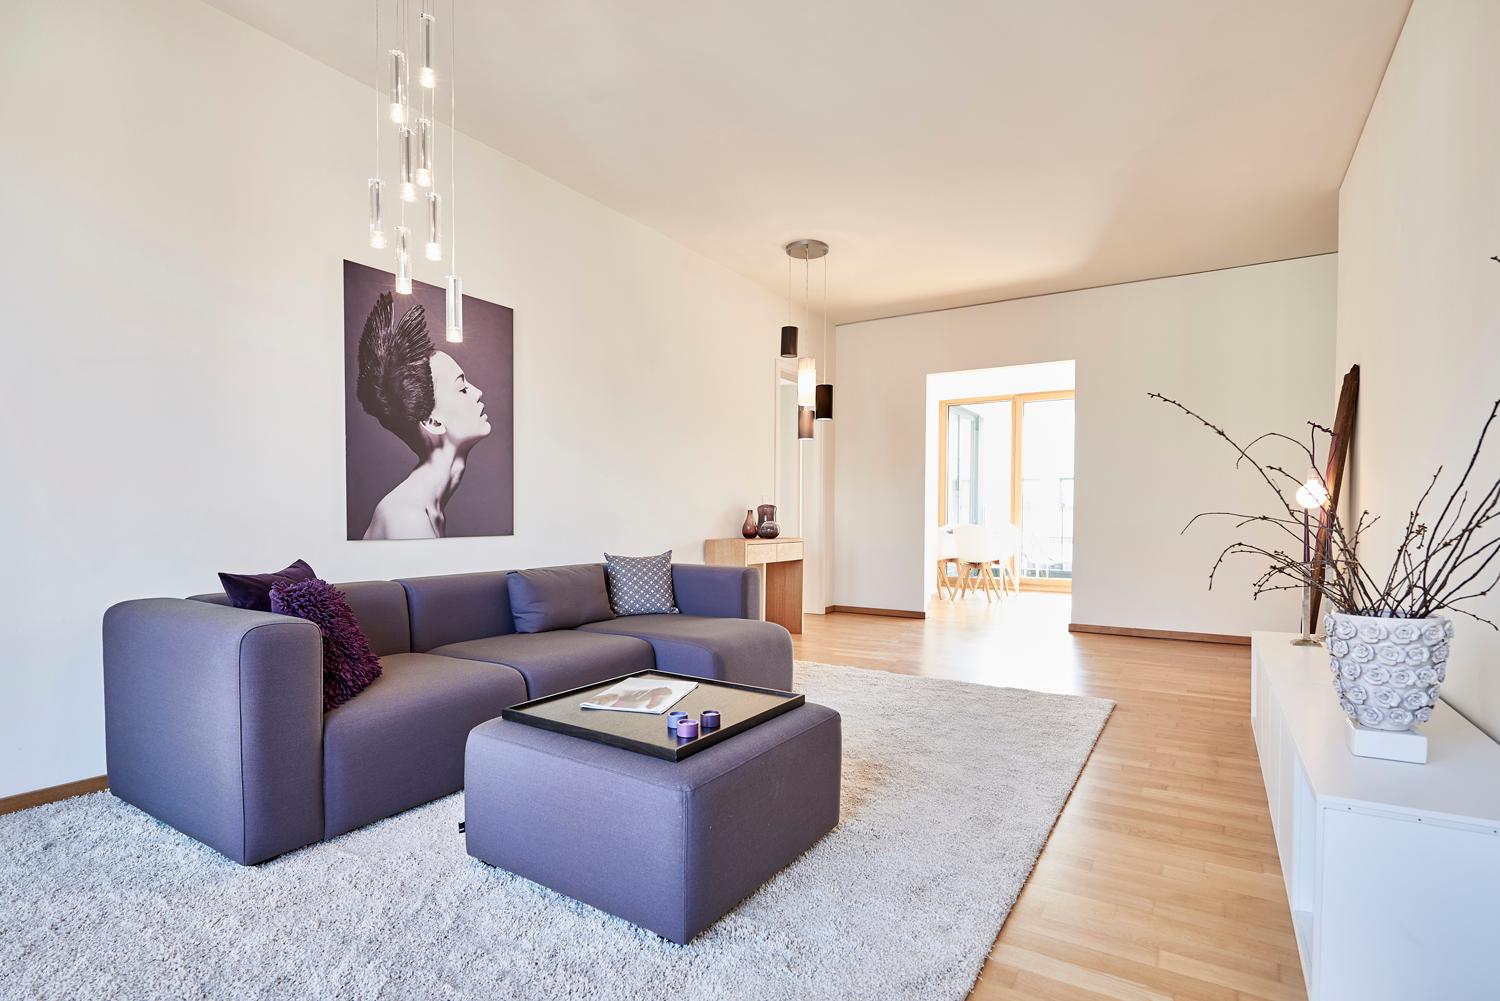 Wohnzimmer mit Blick in Flur und Küche #sofa ©Michael Pfeiffer Fotografie